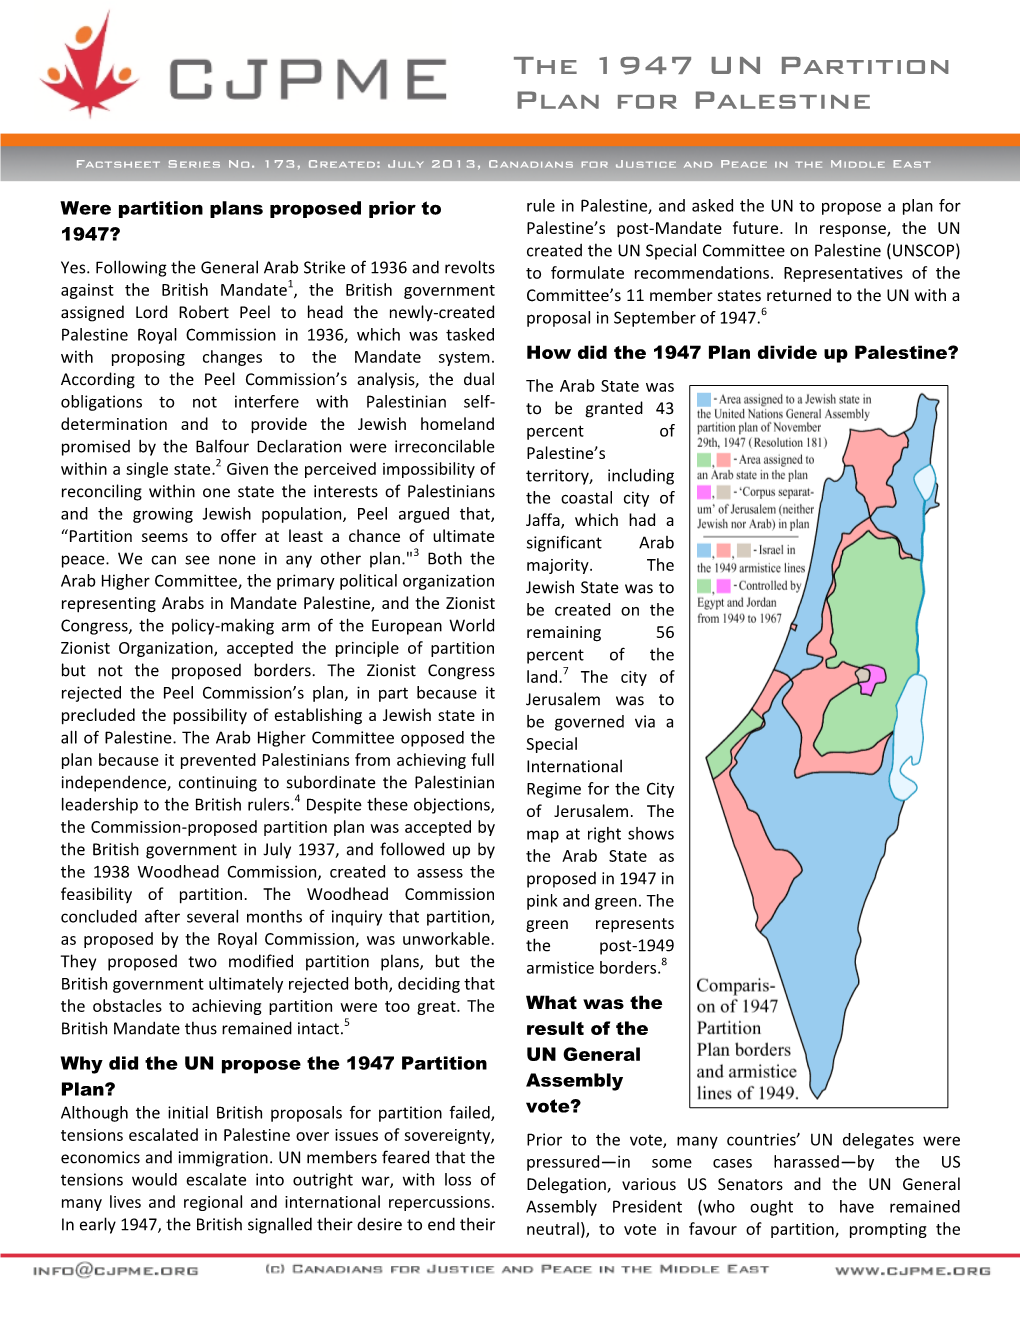 The 1947 UN Partition Plan for Palestine